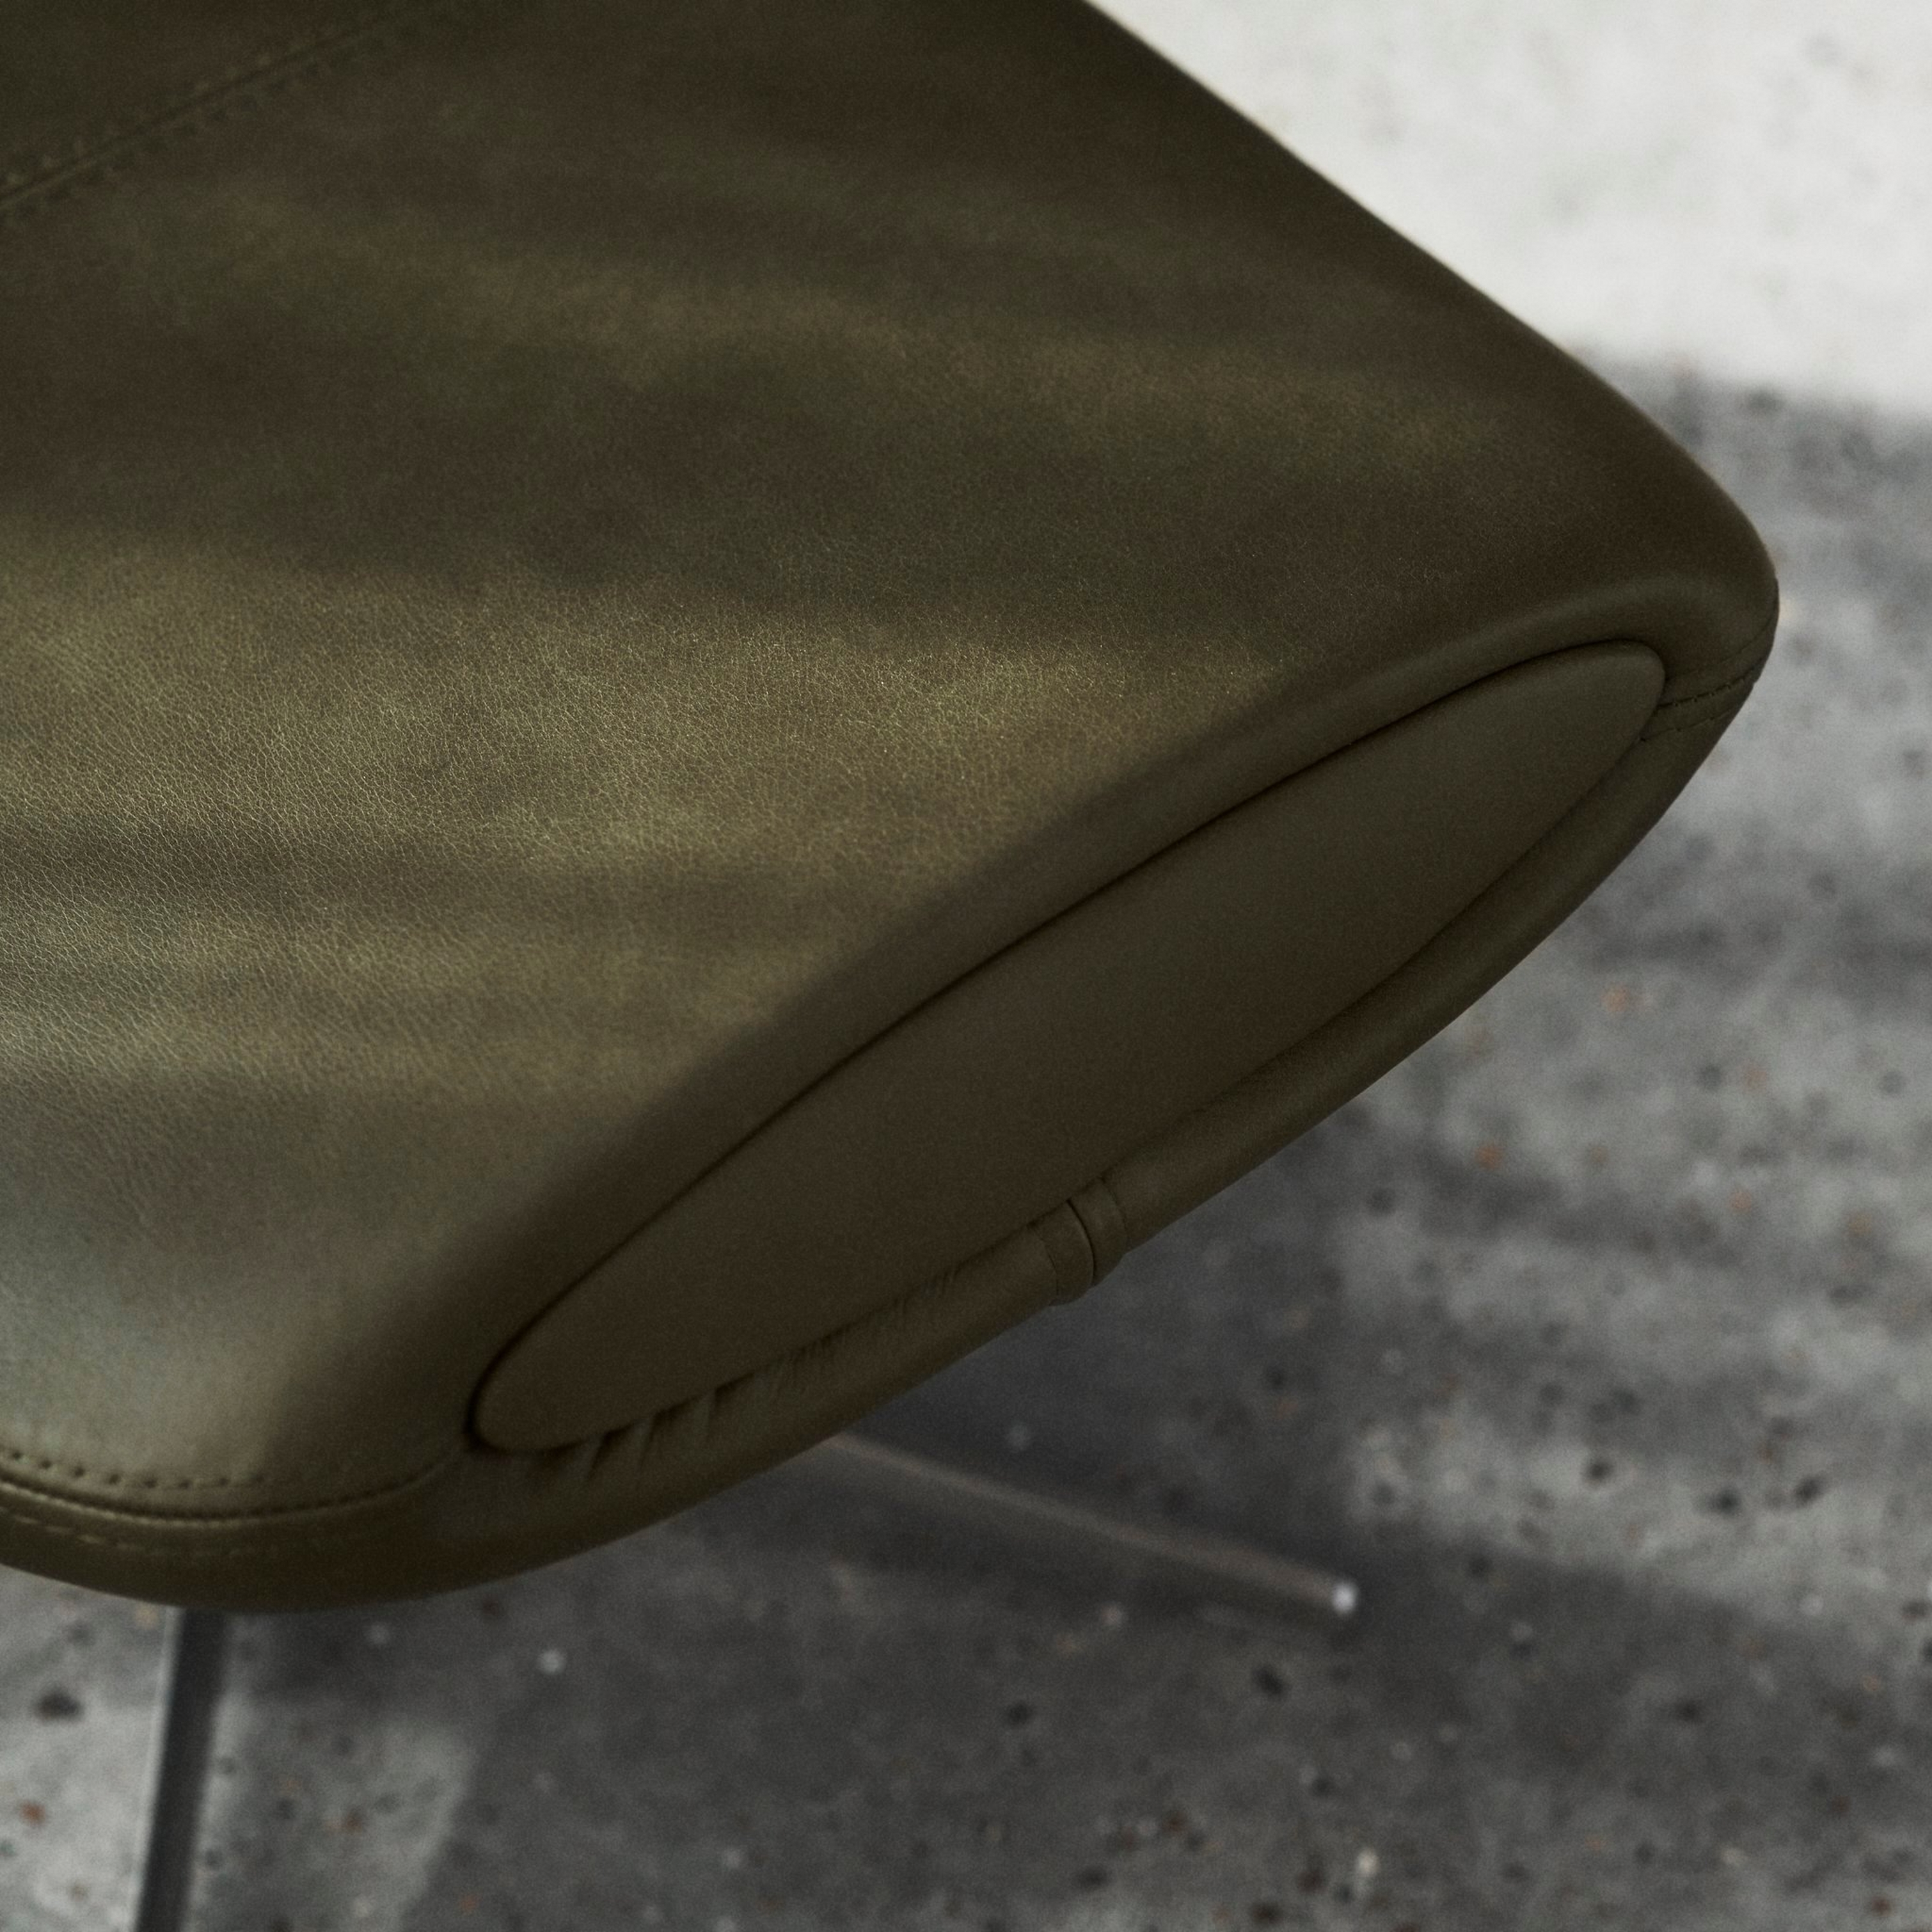 Imagem ampliada da extremidade da cadeira verde azeitona com detalhes de costura num pavimento de betão.